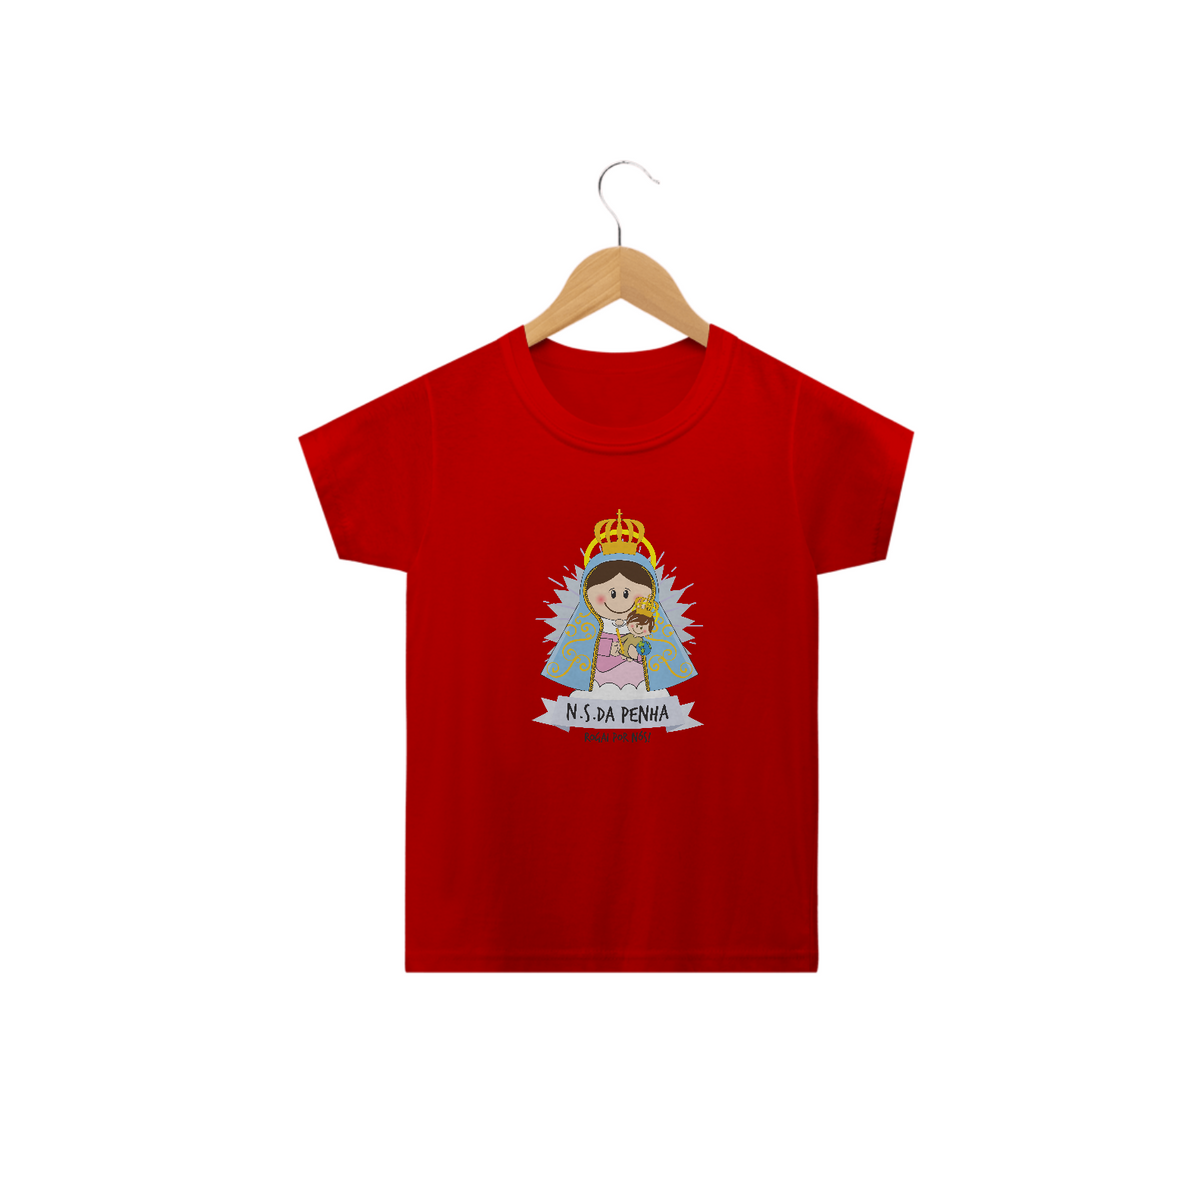 Nome do produto: Camiseta Infantil Coleção Santinhos N.S. da Penha